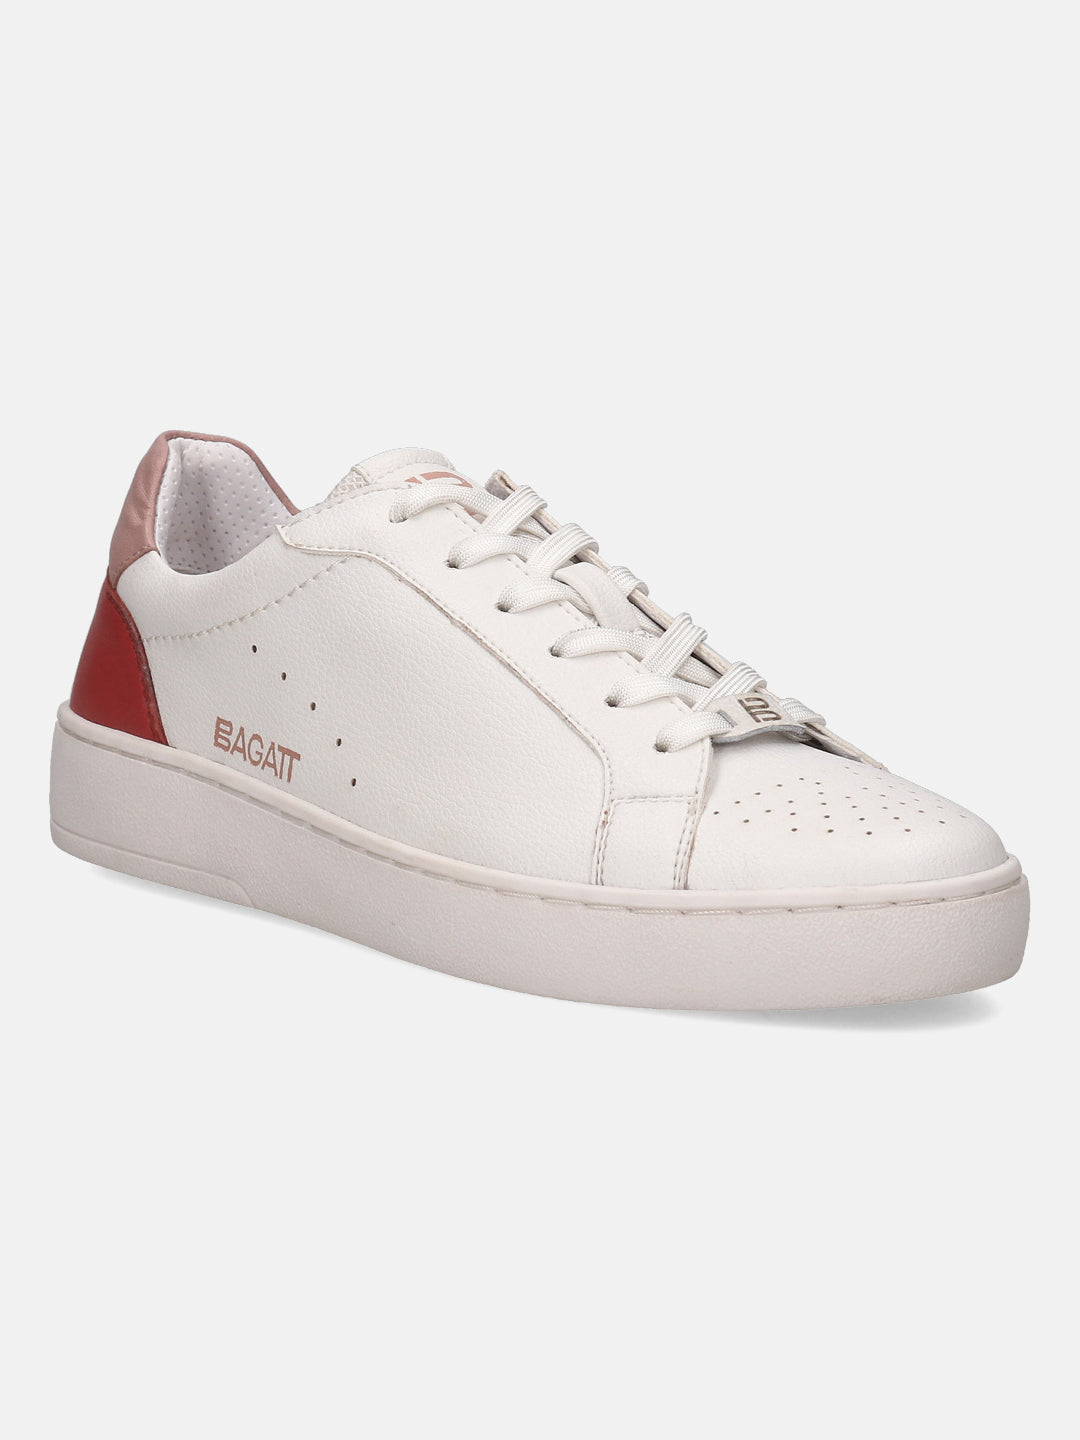 BAGATT White Mid Top Sneakers